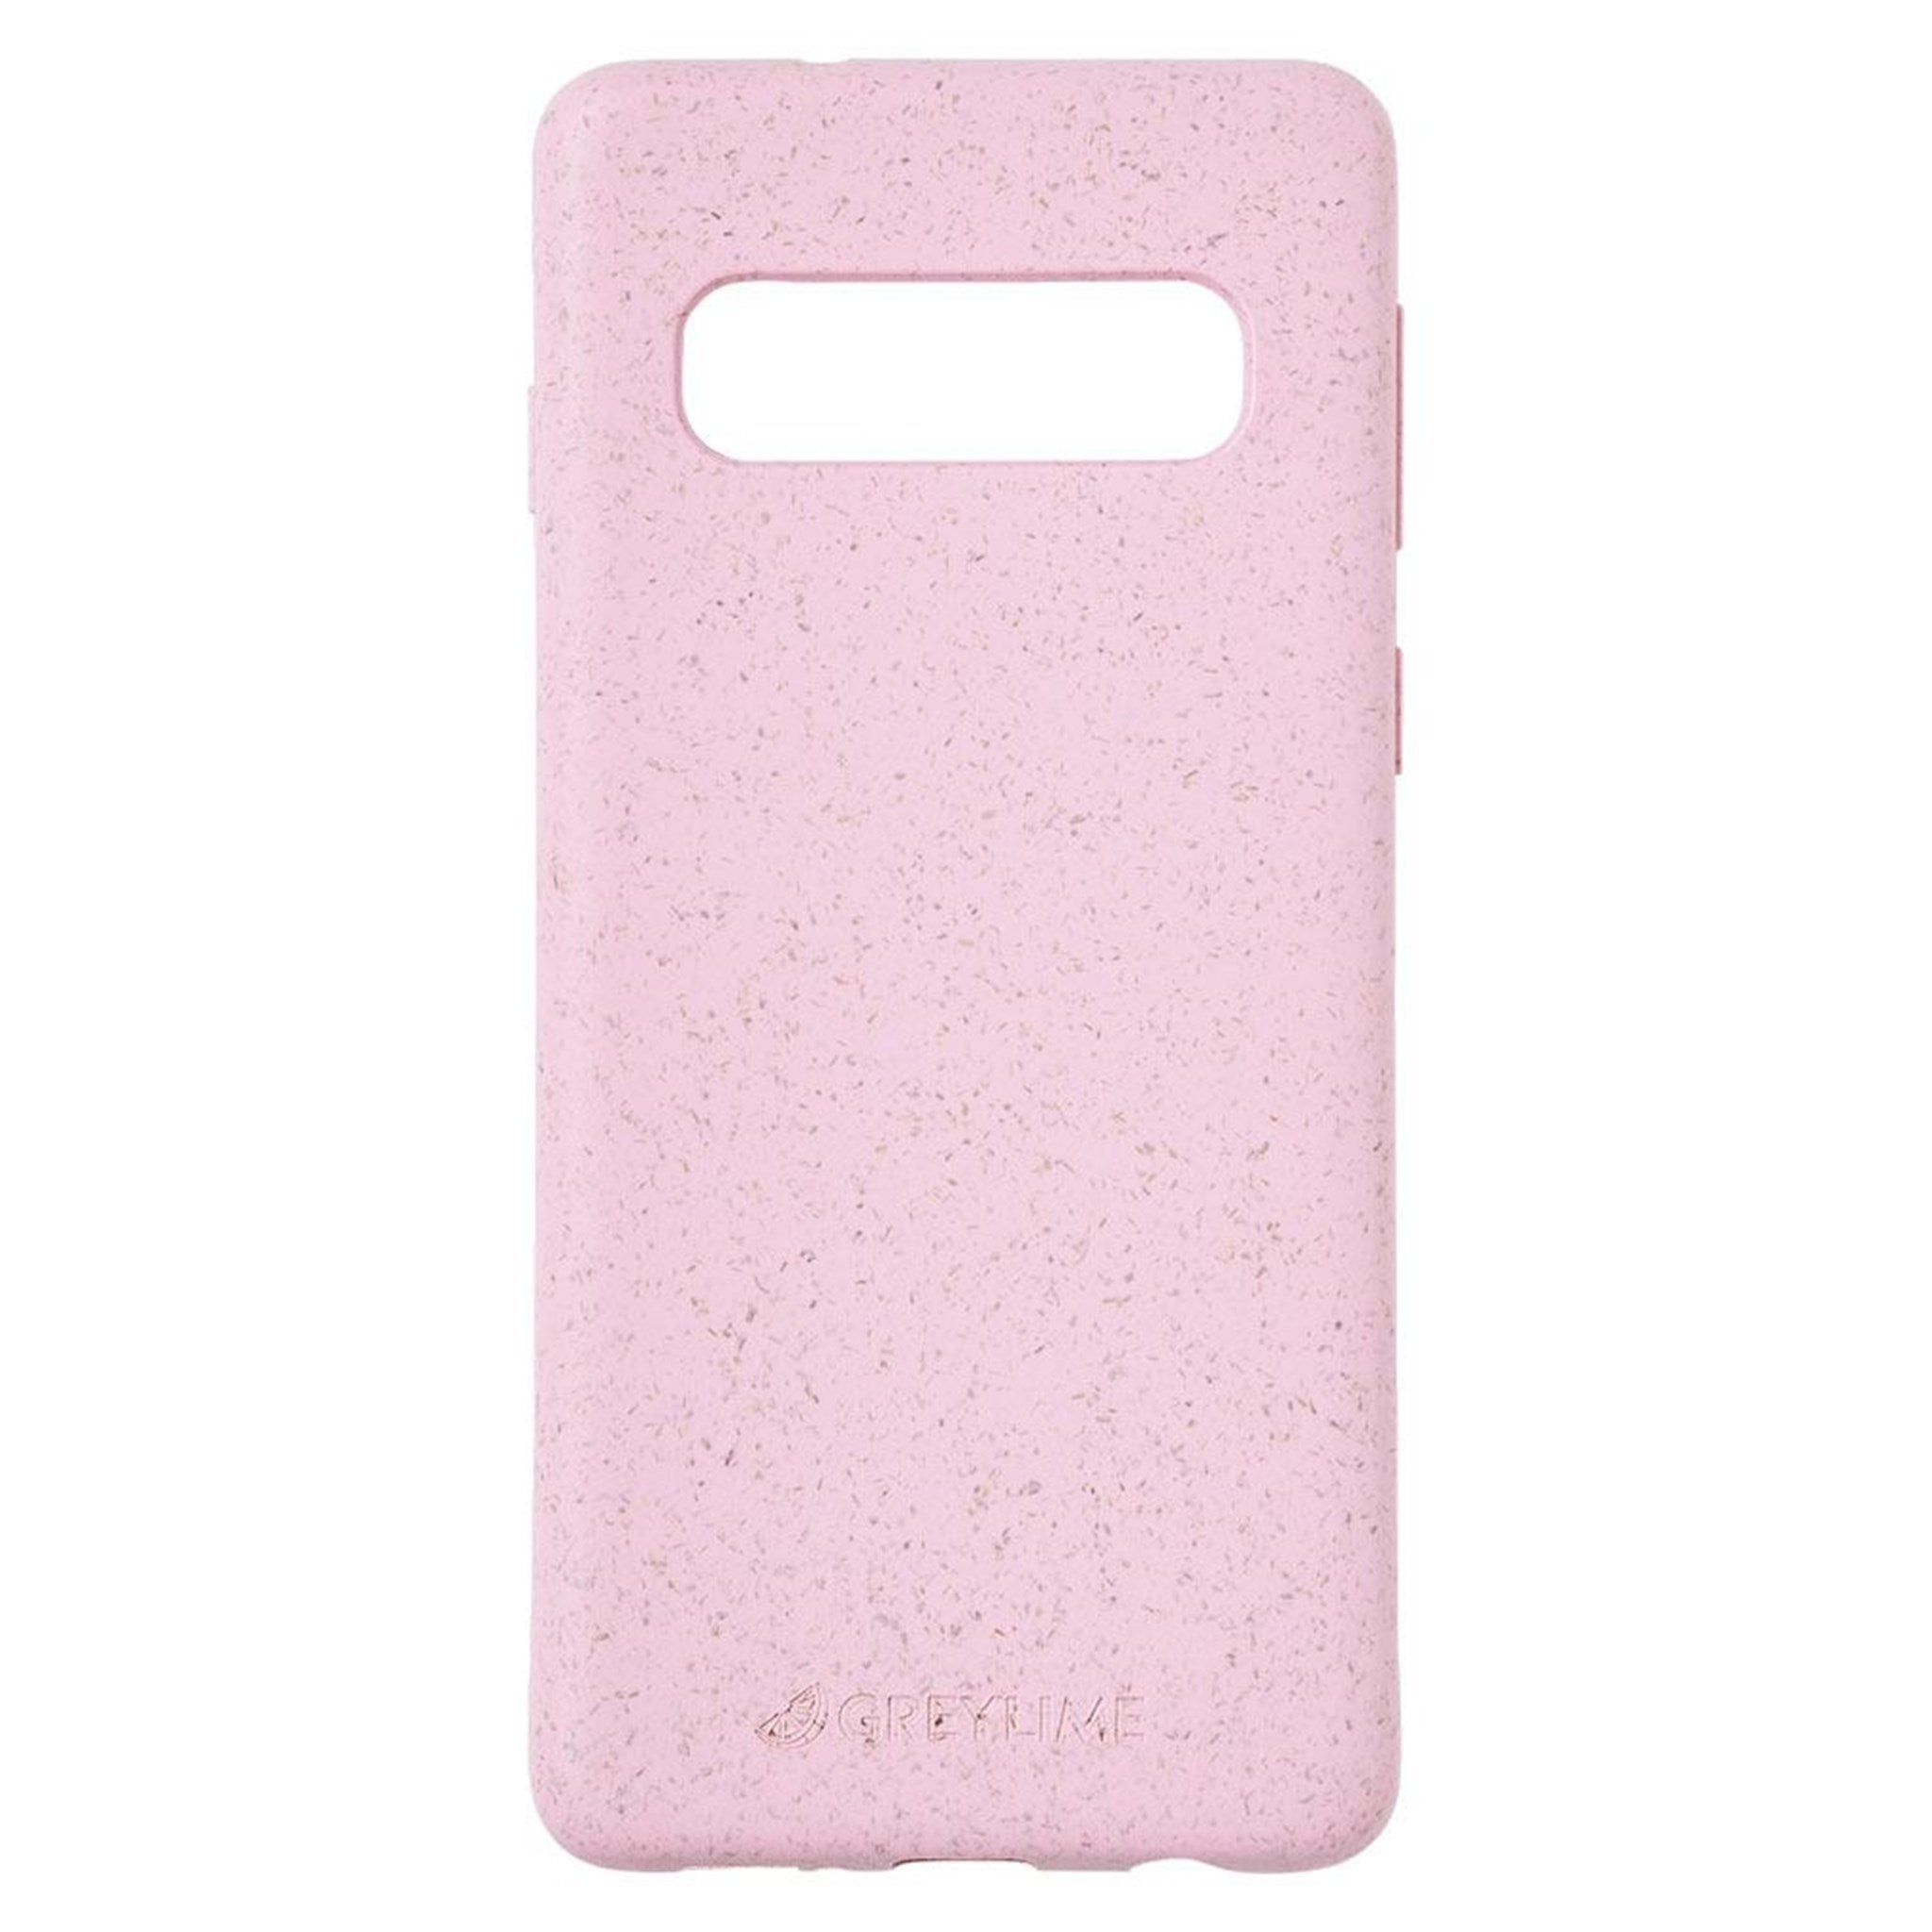 Billede af GreyLime Samsung Galaxy S10+ Miljøvenligt Cover Pink hos GreyLime